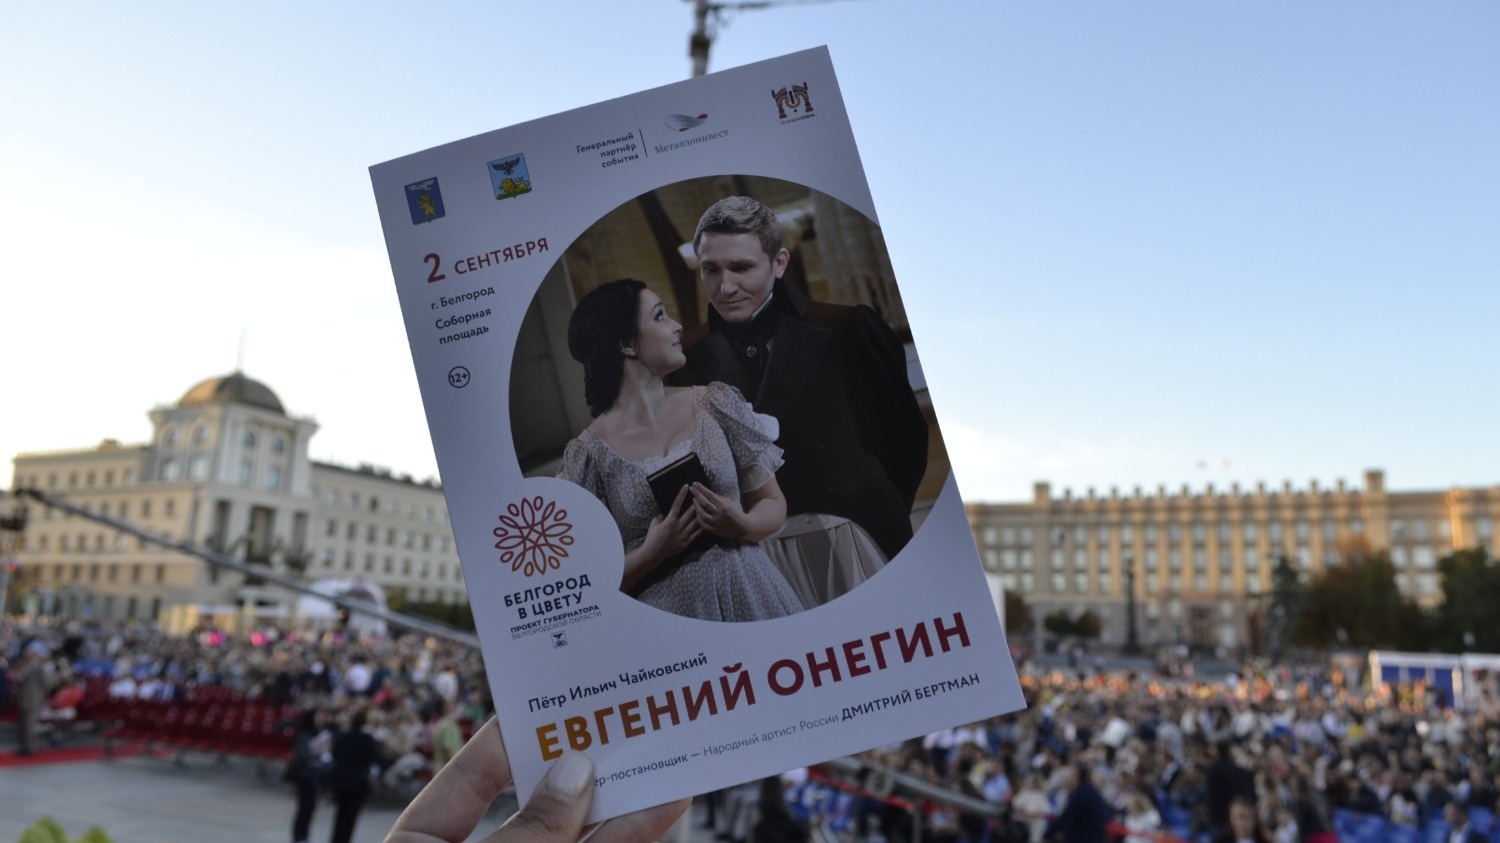 опера "Евгений Онегин" в Белгороде